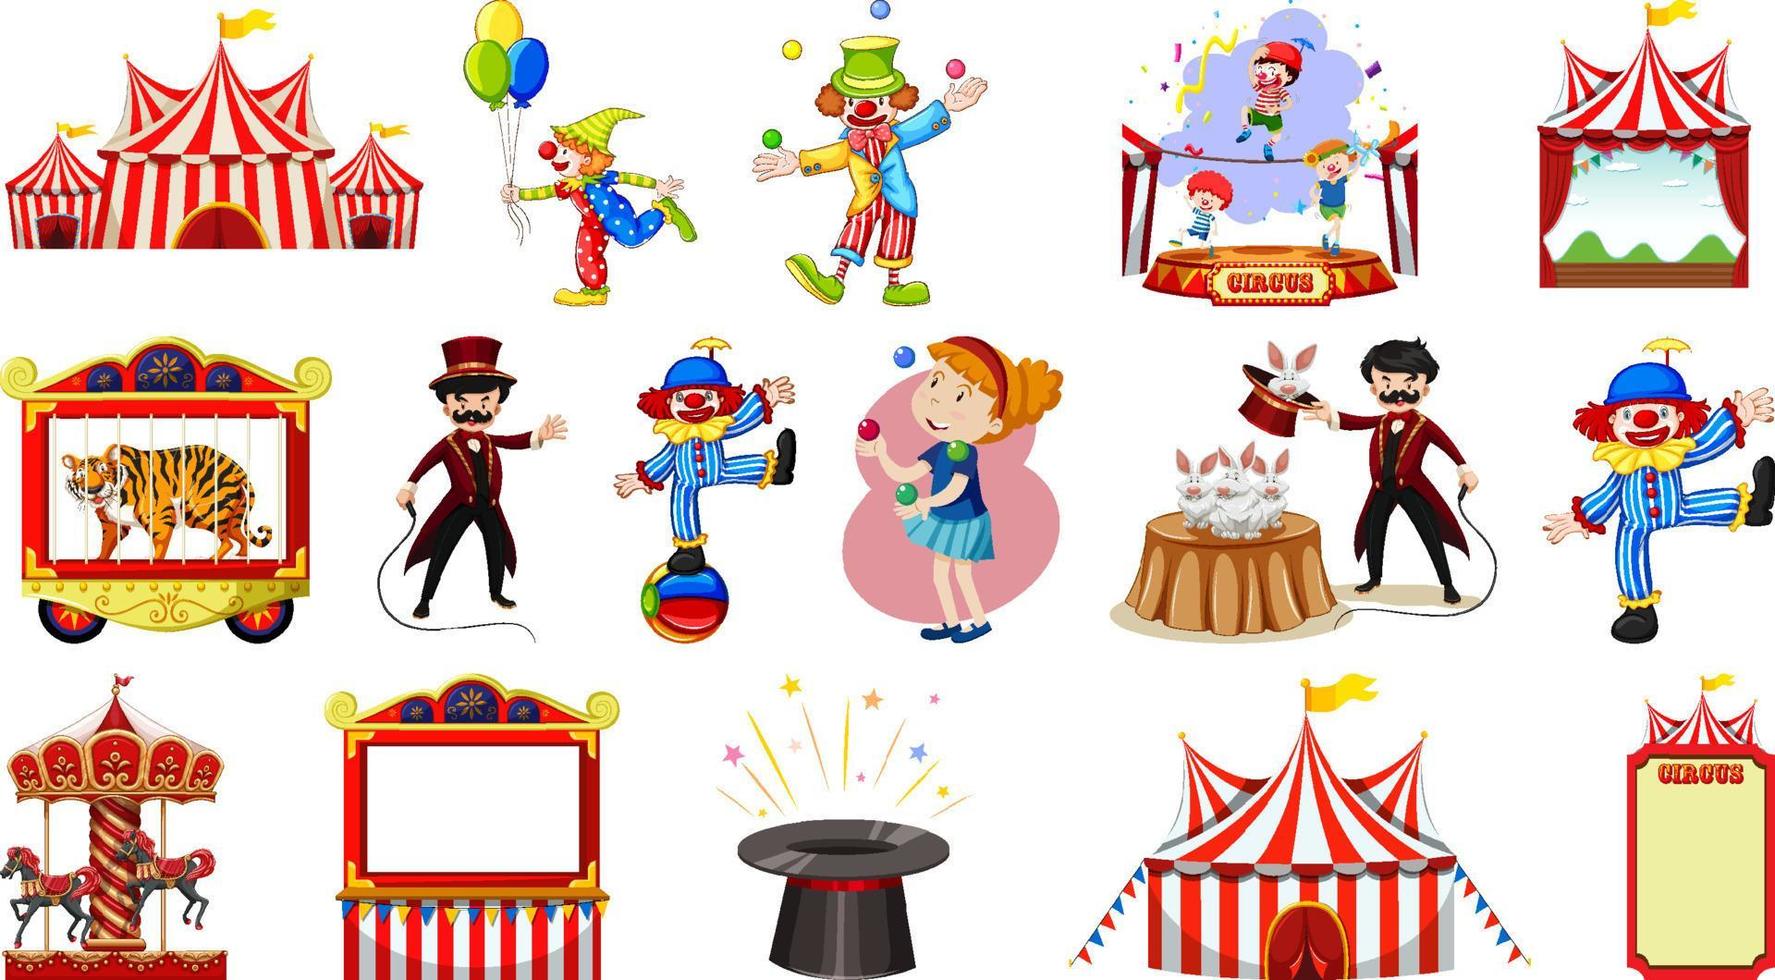 conjunto de personagens de circo e elementos de parque de diversões vetor